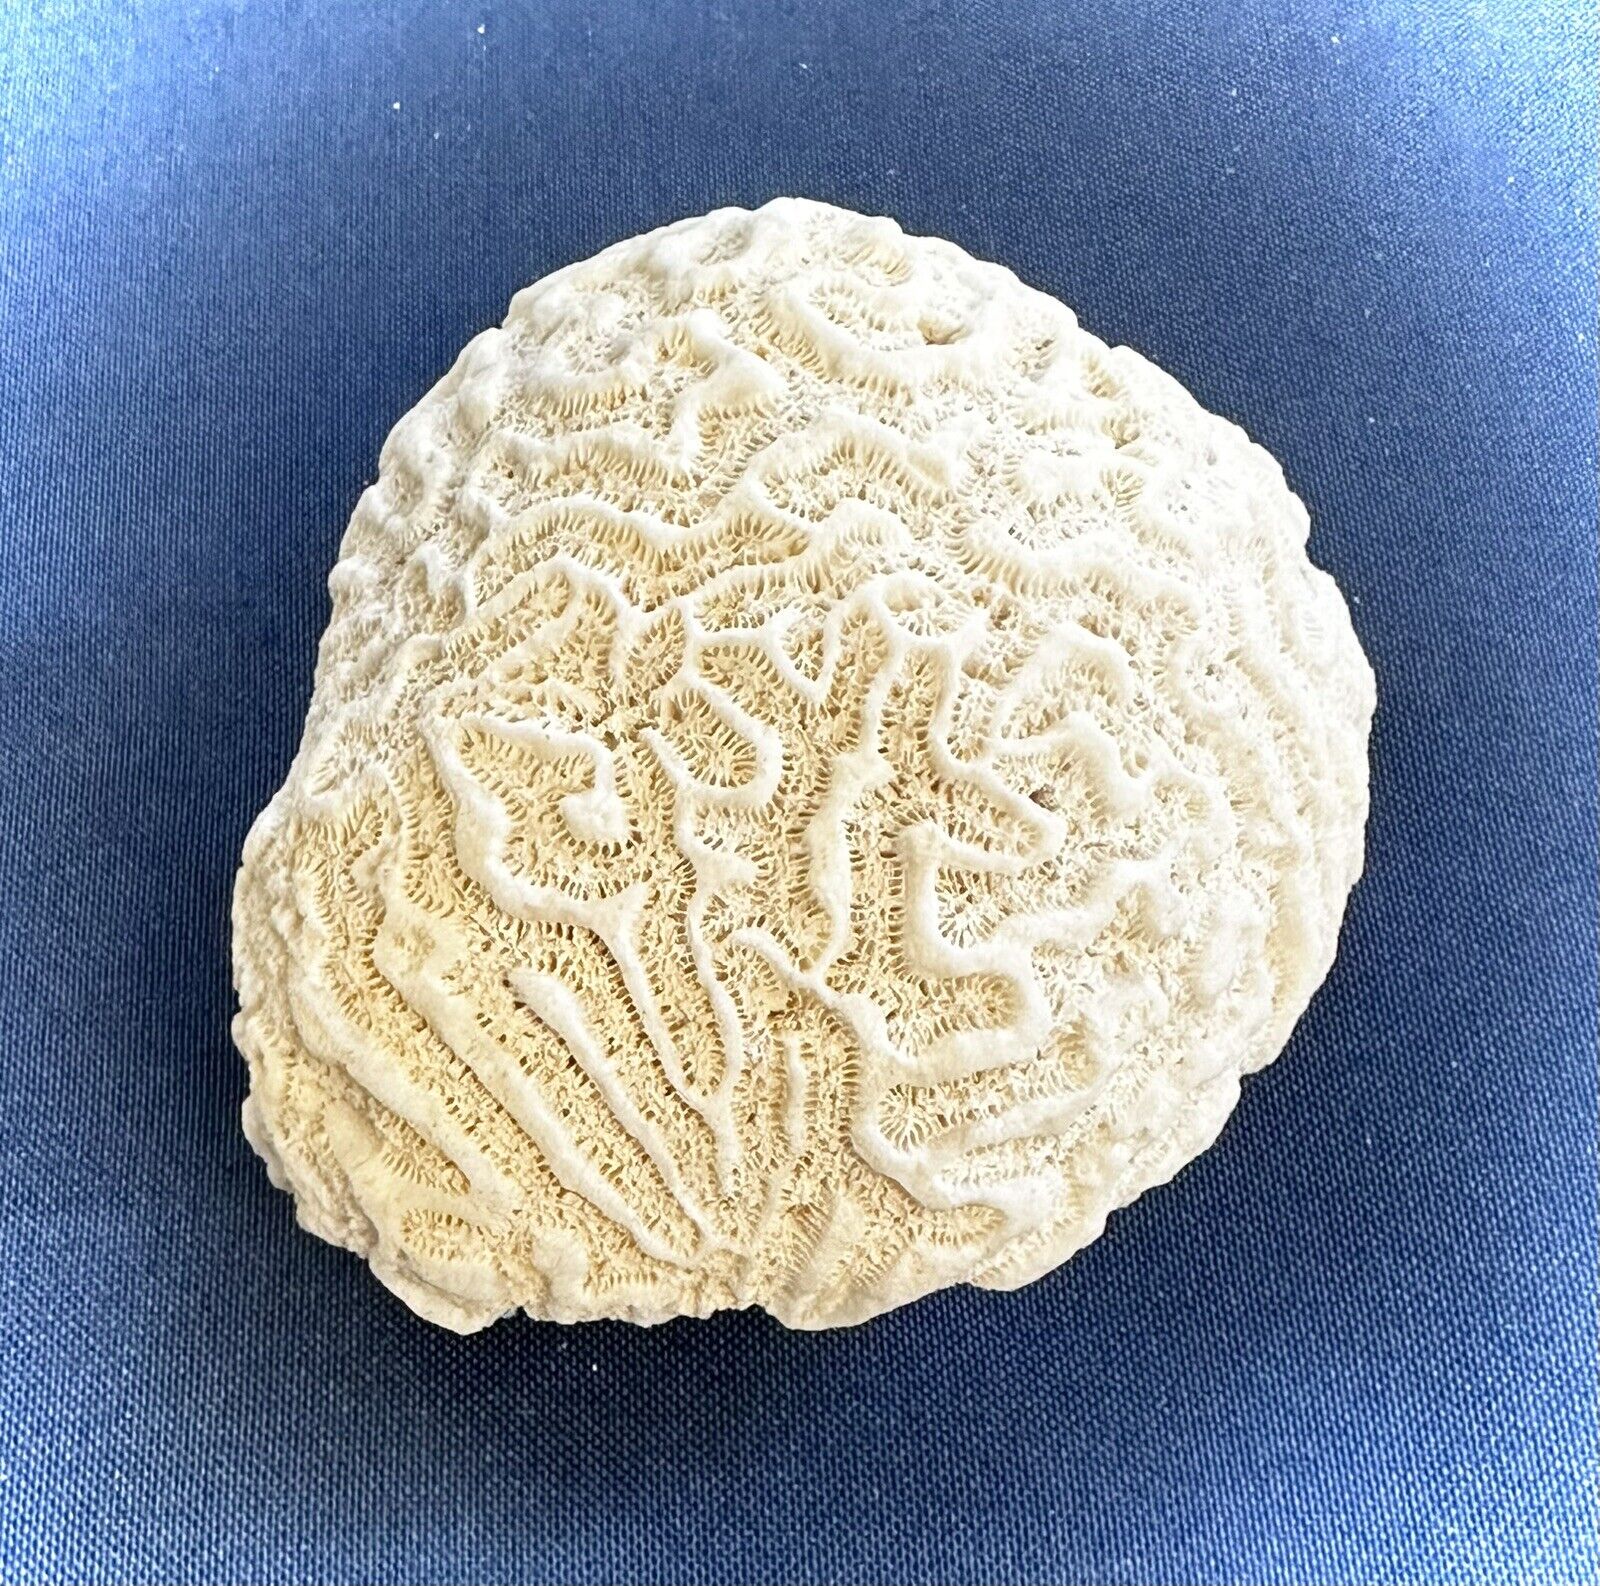 White Brain Coral Specimen 1 lb